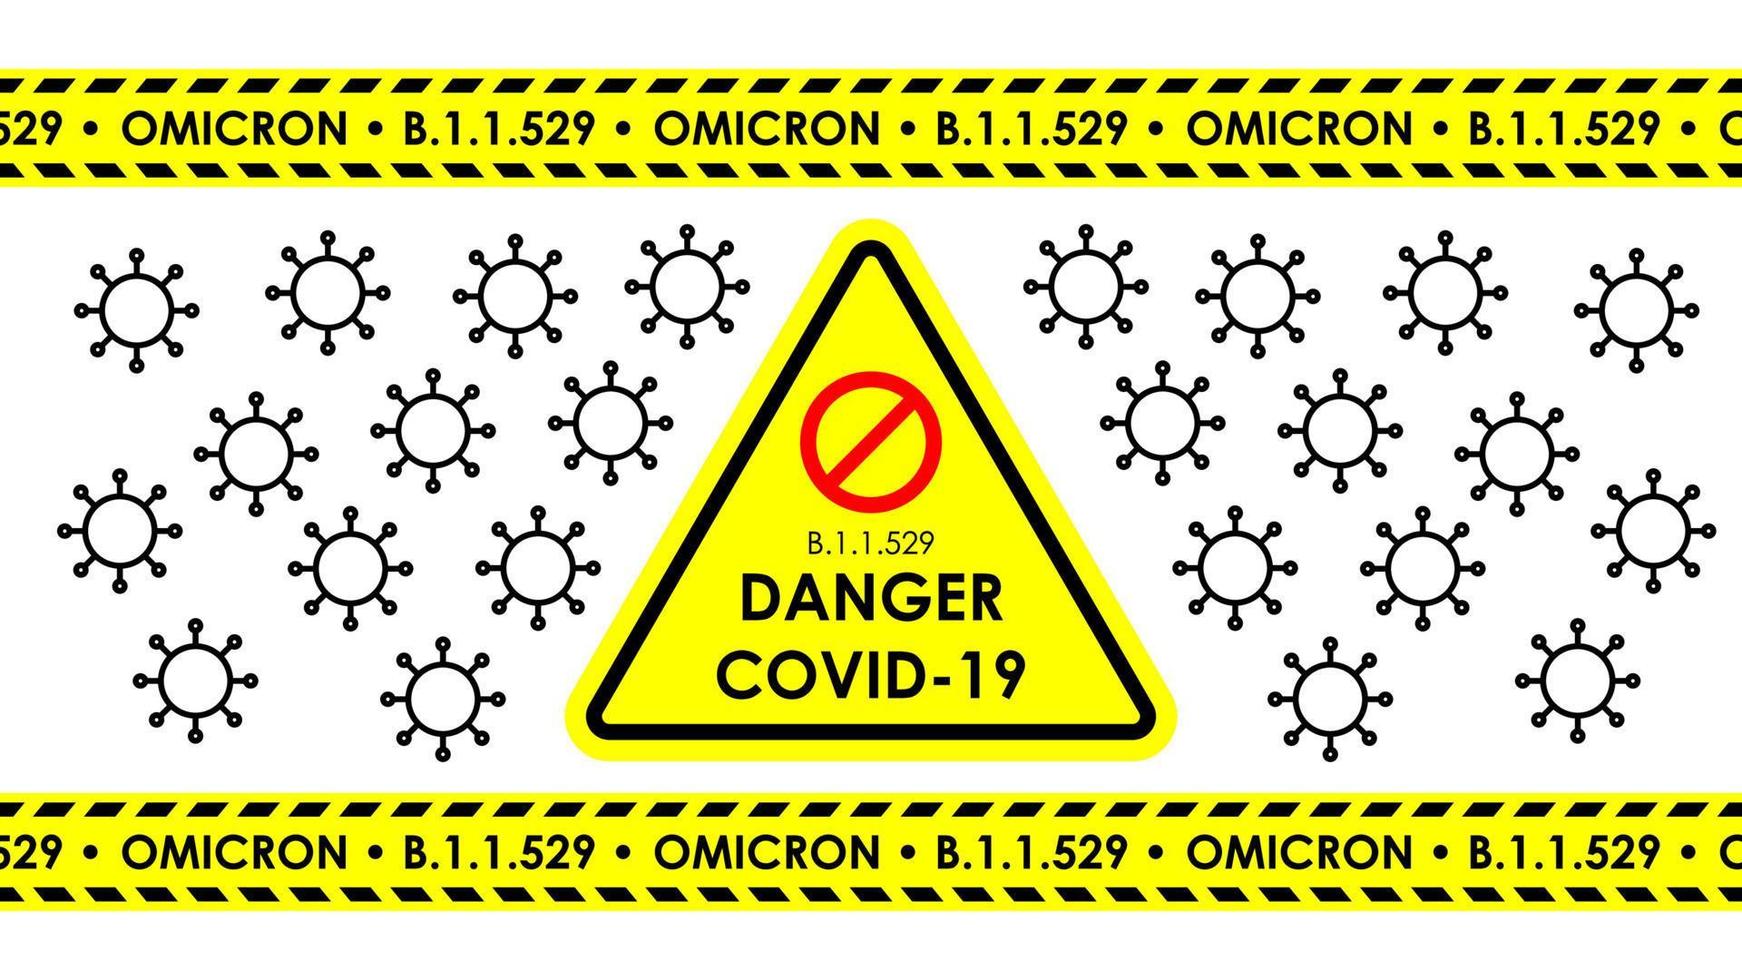 perigo covid-19 nova variante b.1.1.529 omicron, que classificou a nova mutação do vírus omicron. vetor